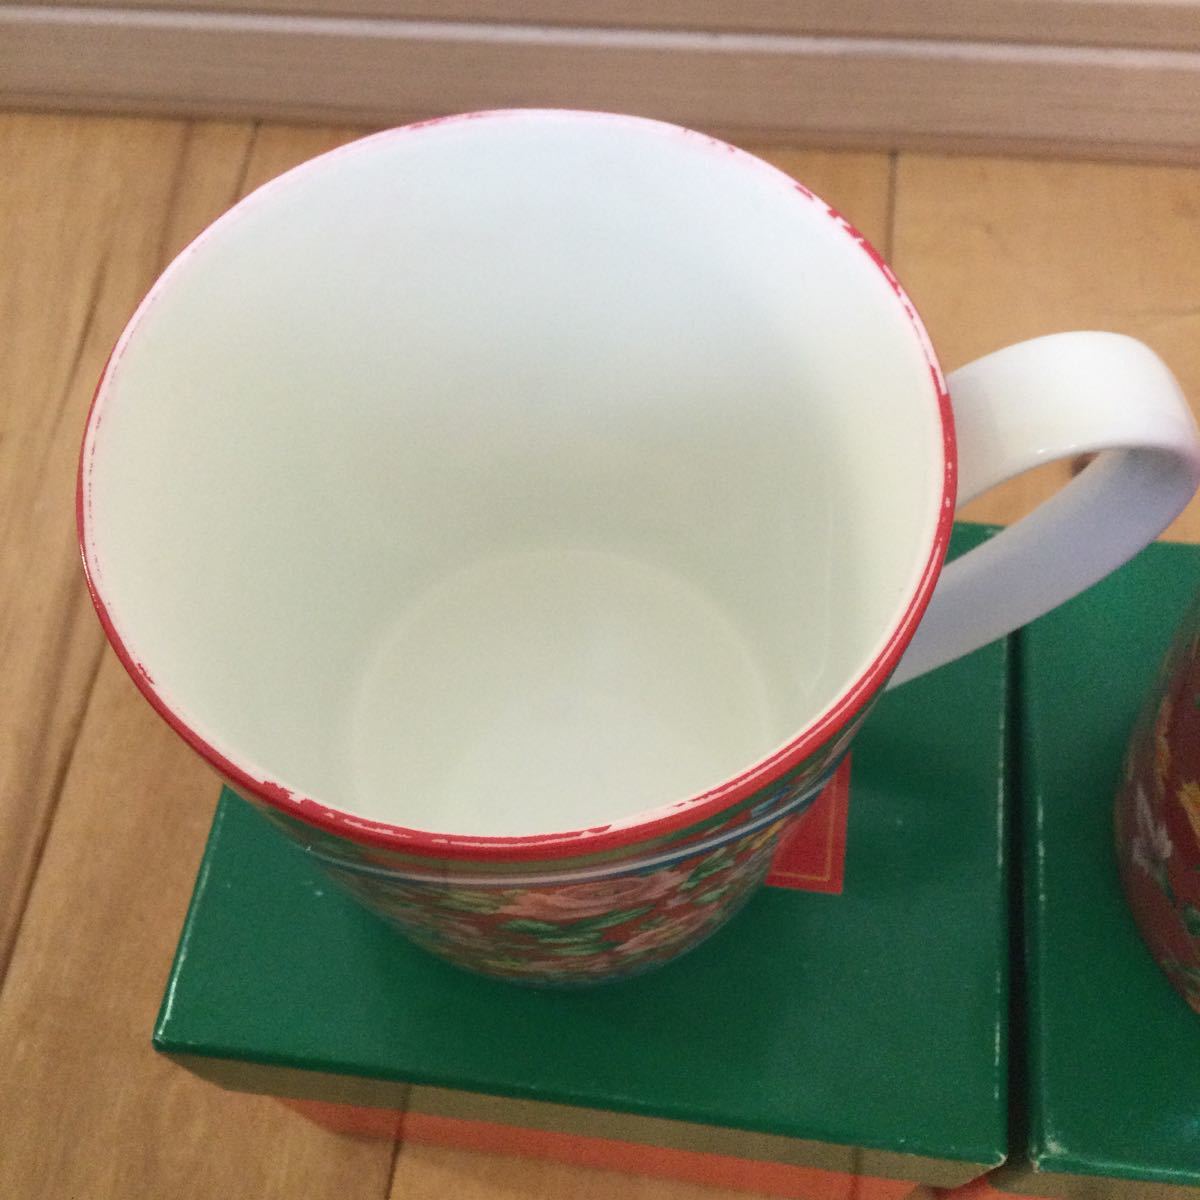 KENZO マグカップ 青 赤 ペアマグカップ 花柄 廃盤 未使用品の画像3